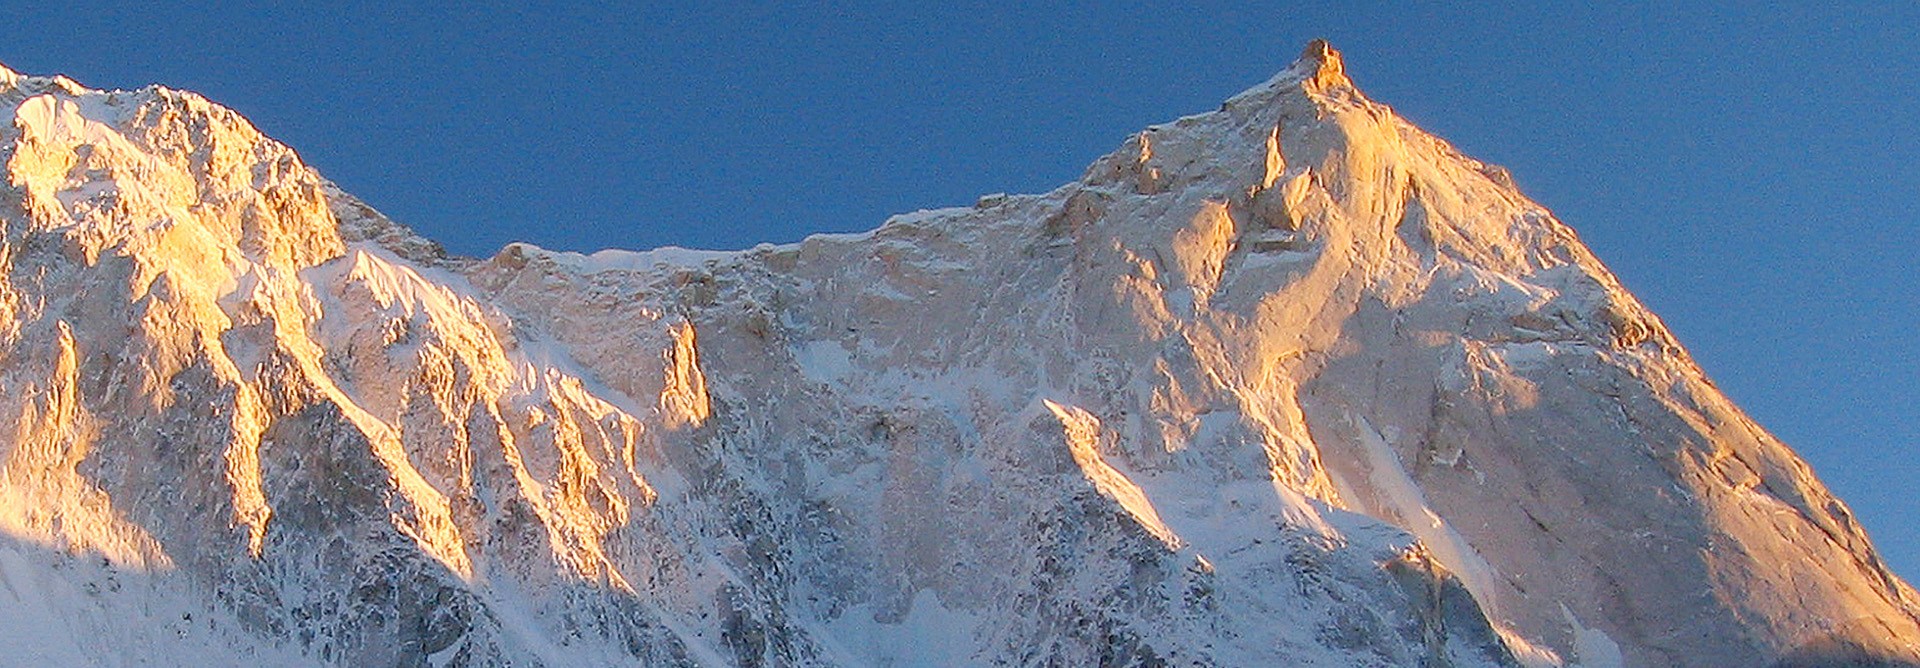 De berg roept.... (de top van de Changabang in het avondlicht)